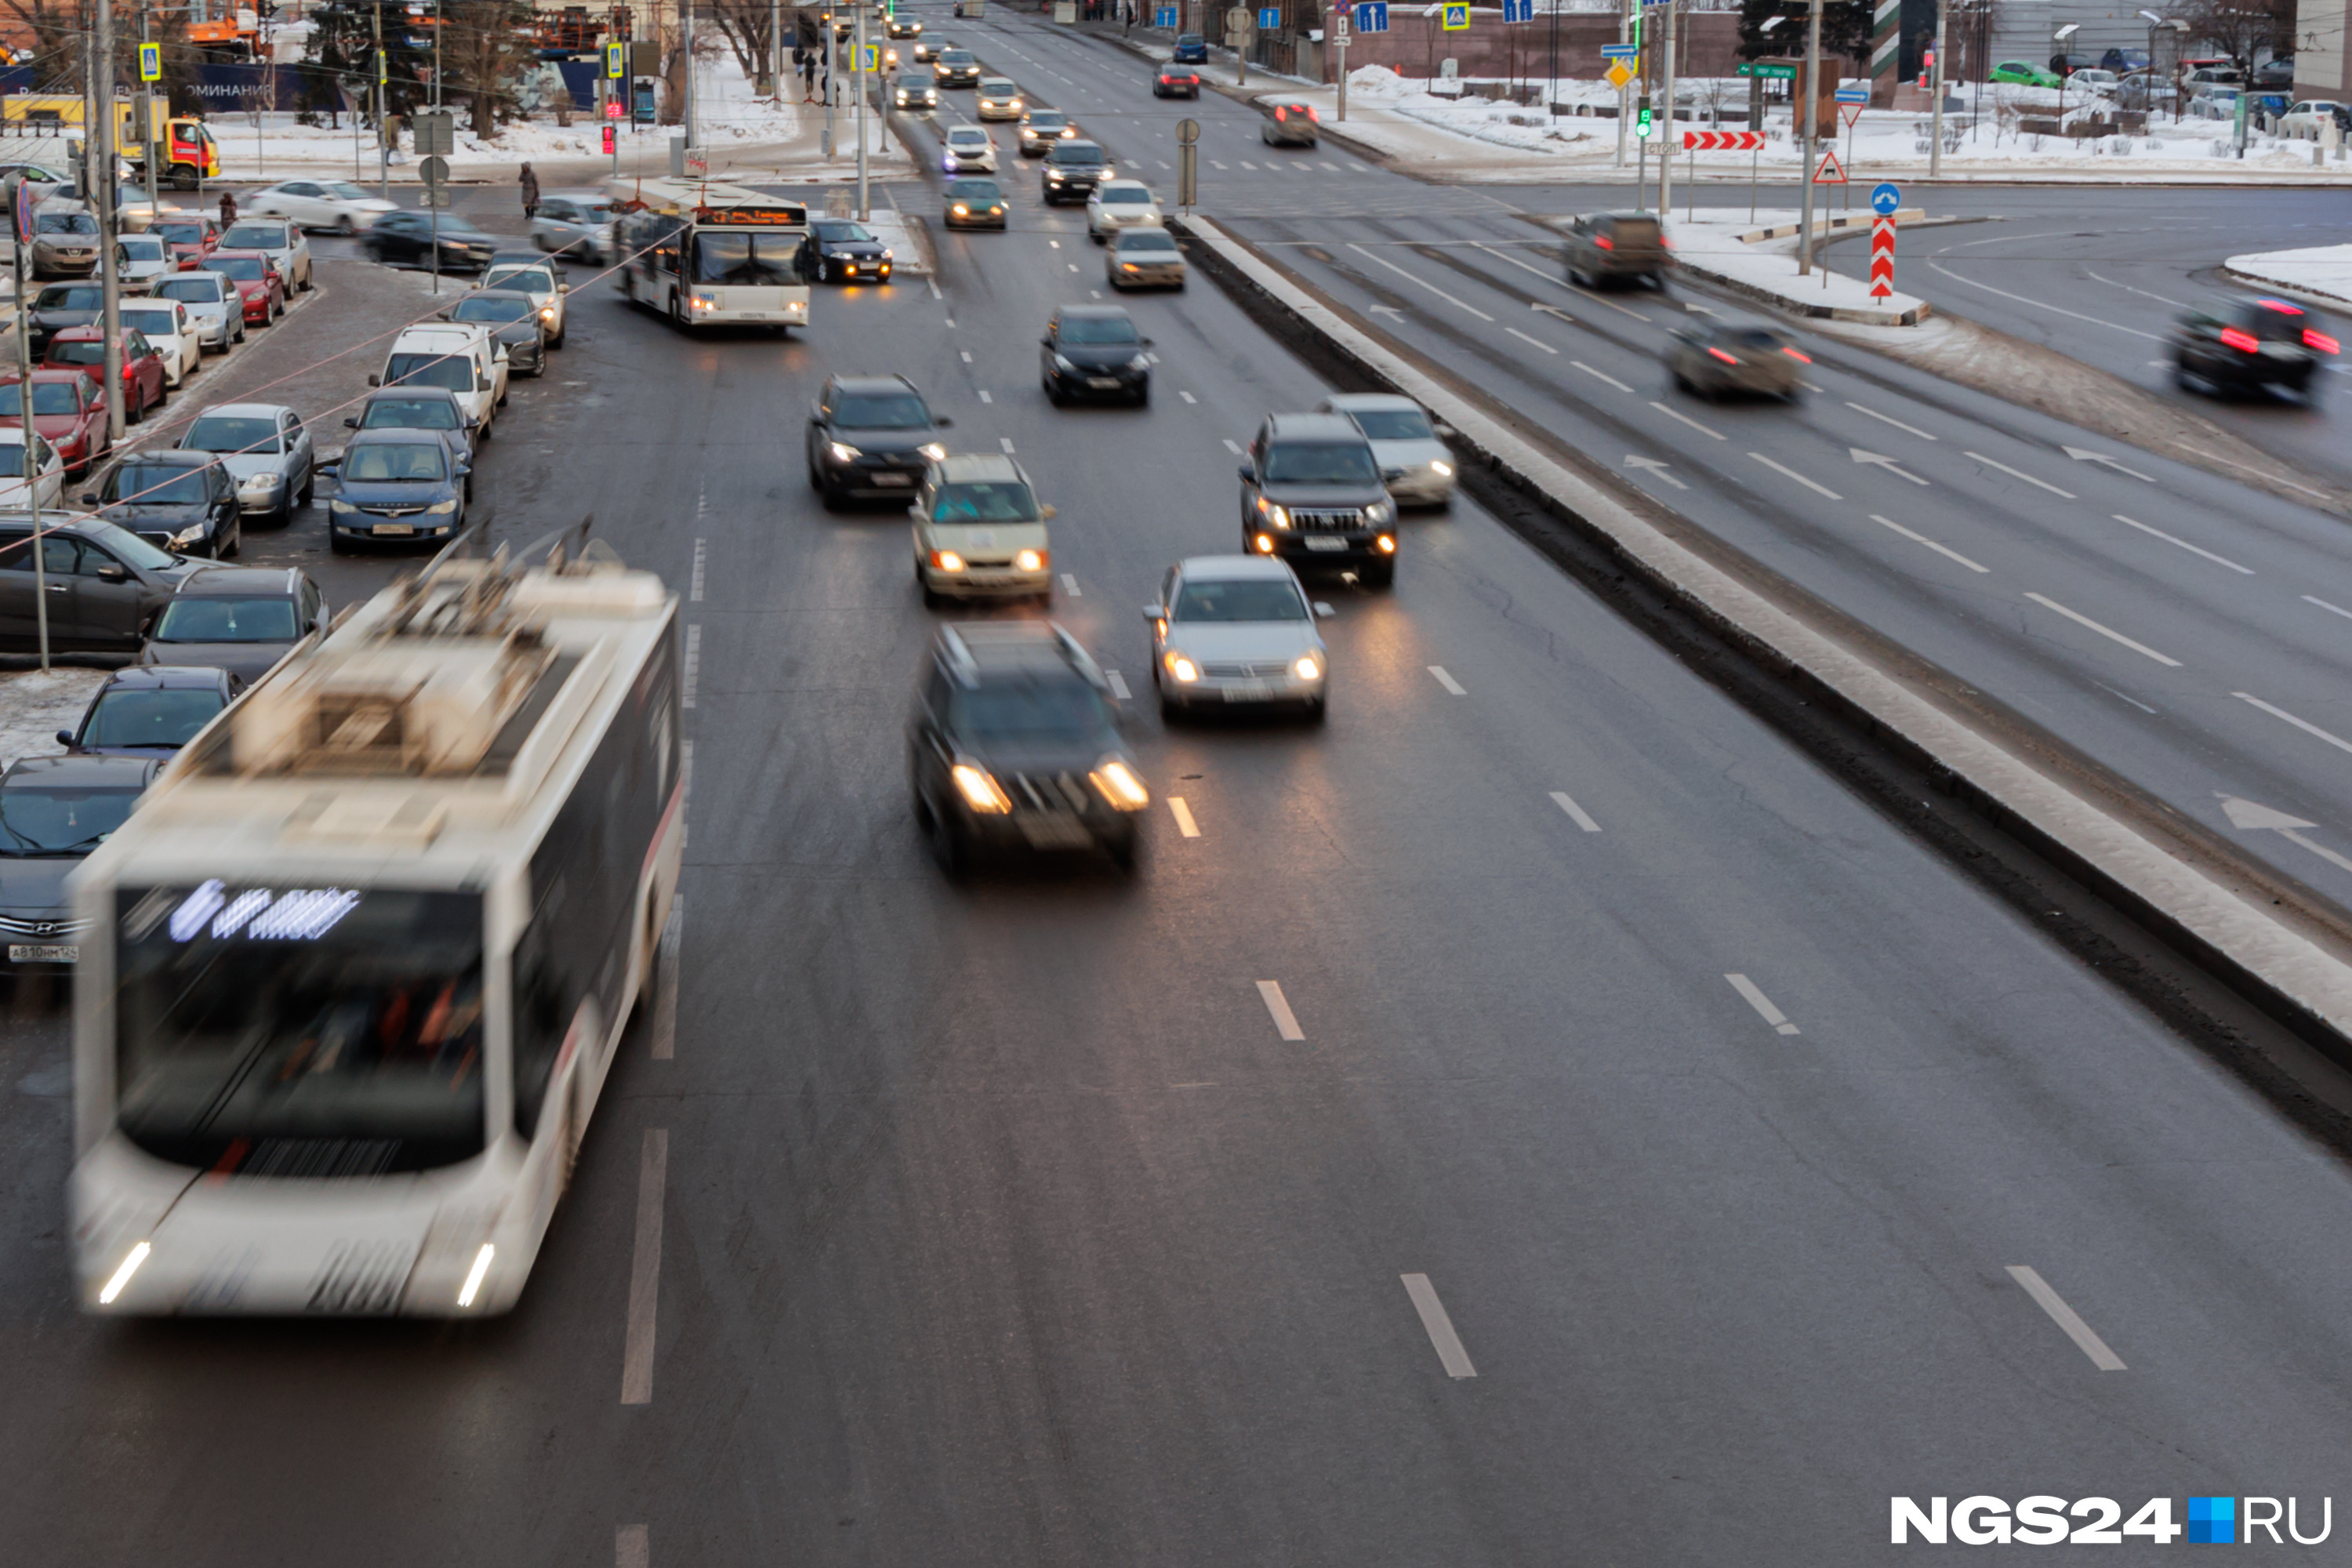 Красноярск обошел Новосибирск по качеству общественного транспорта. Эксперты составили рейтинг городов